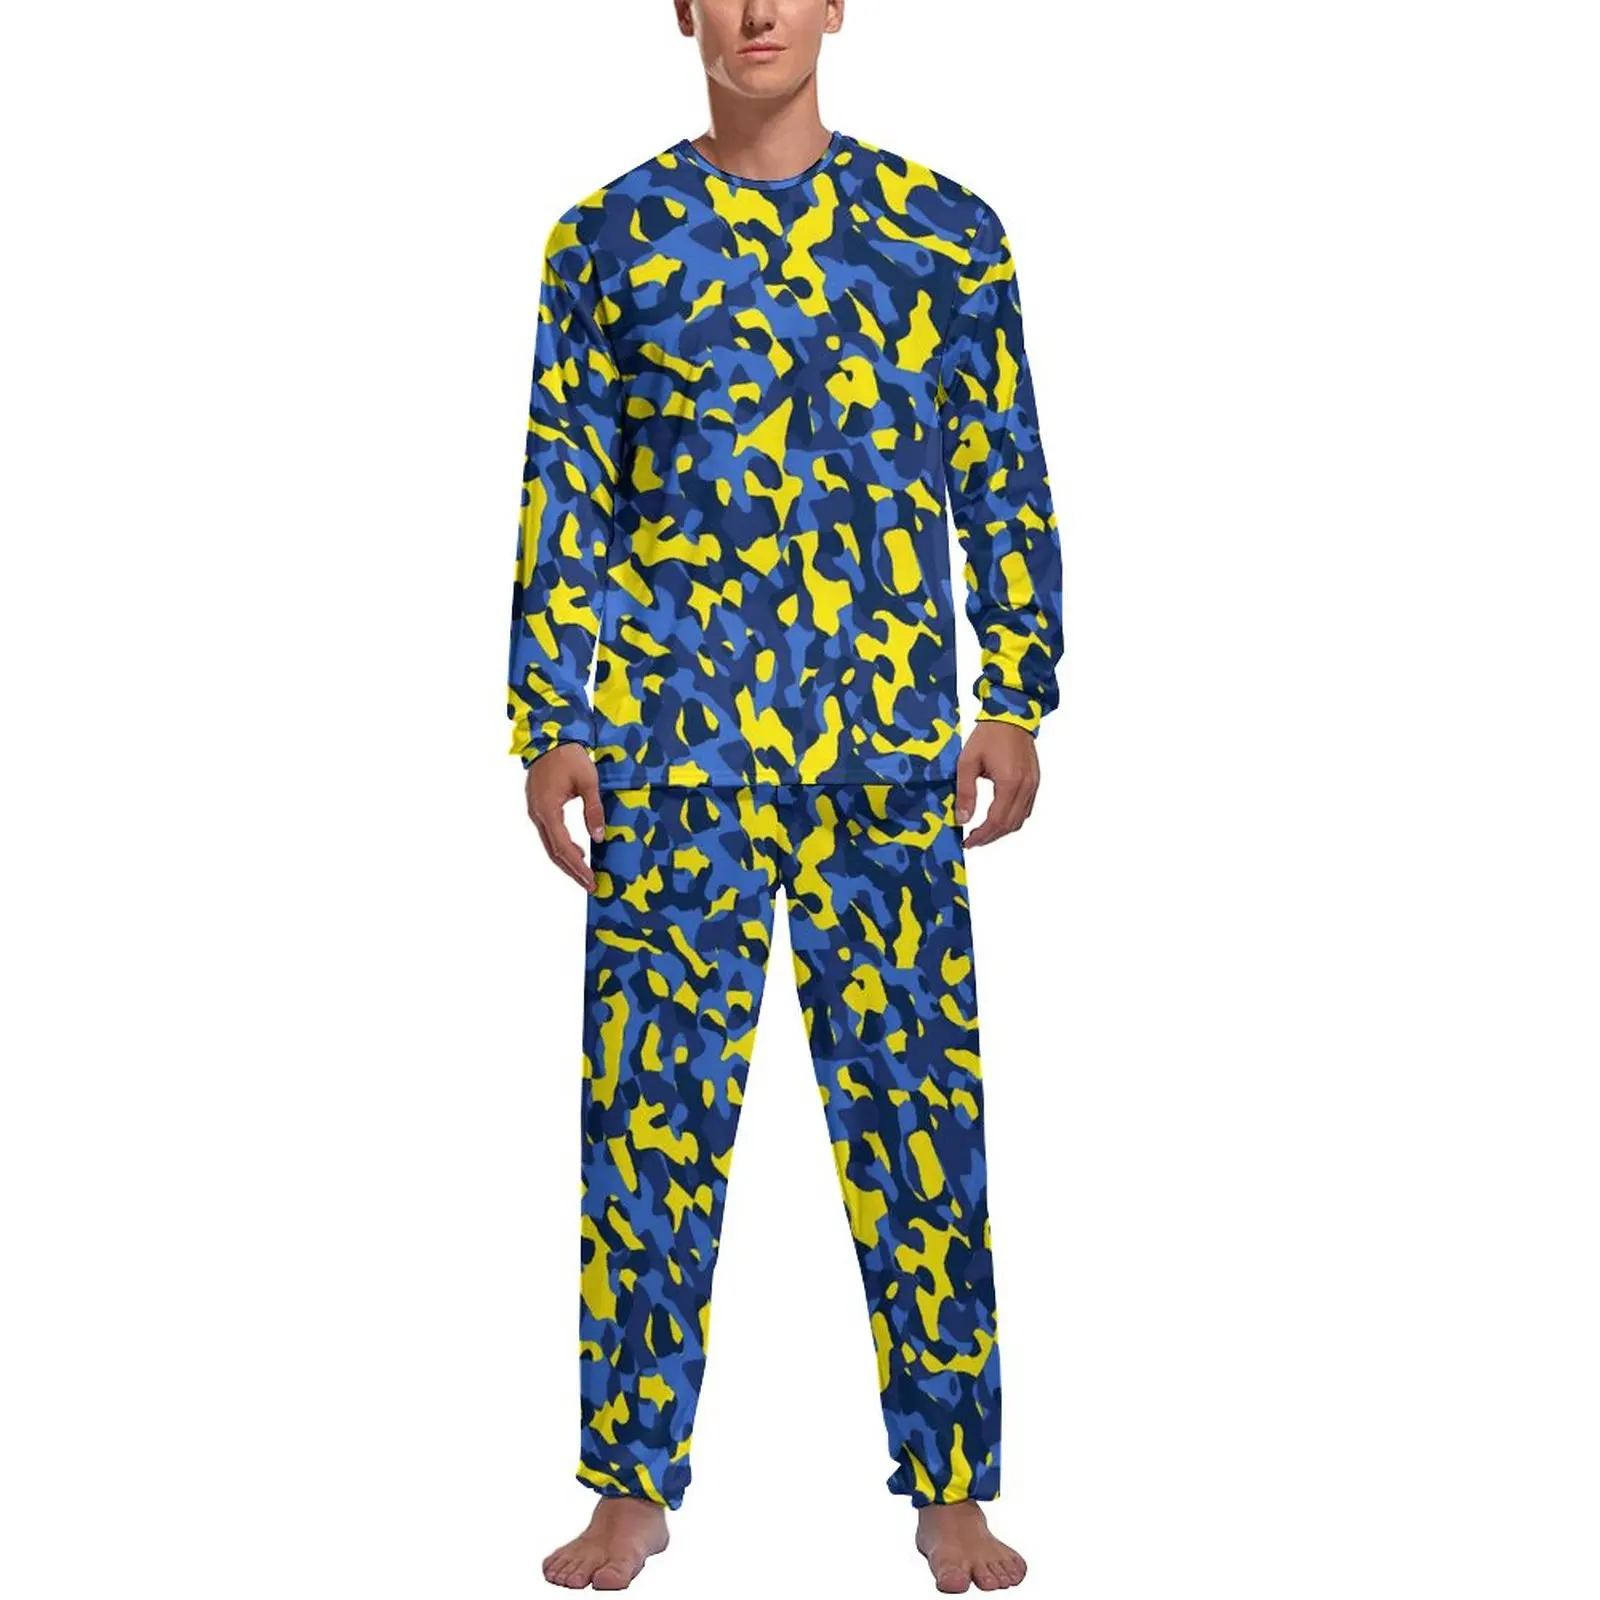 

Пижама с камуфляжным принтом мужская синяя желтая камуфляжная Женская Осенняя пижама с длинным рукавом комплект из двух предметов с графическим принтом